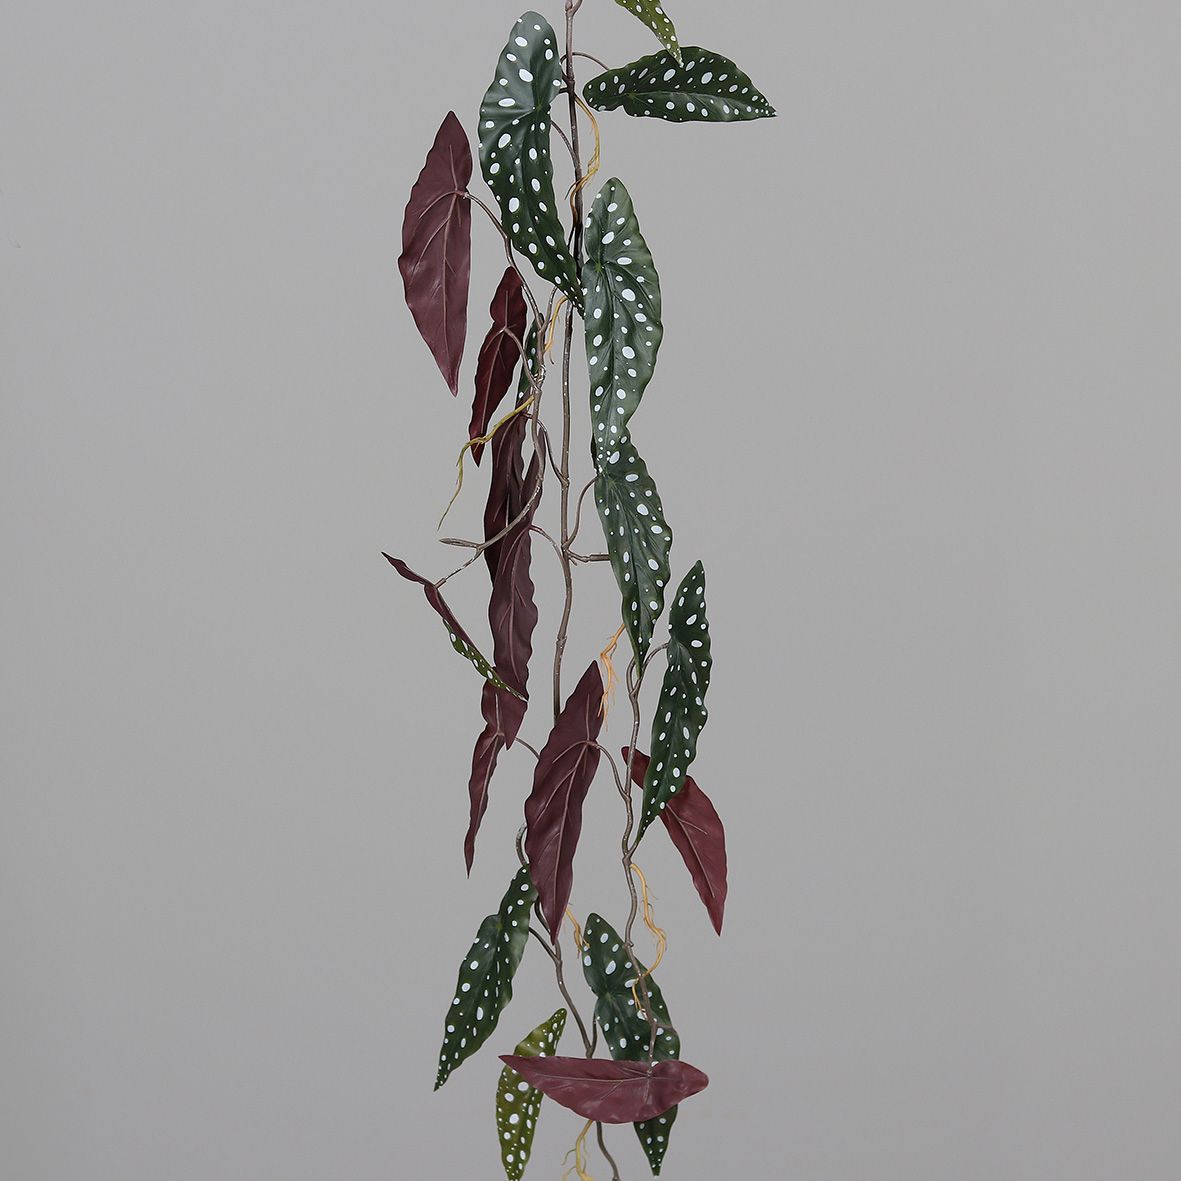 Forellenbegonien-Ranke 120cm DP Kunstpflanzen künstliche Pflanzen Ranken Polka-Dot Maculata